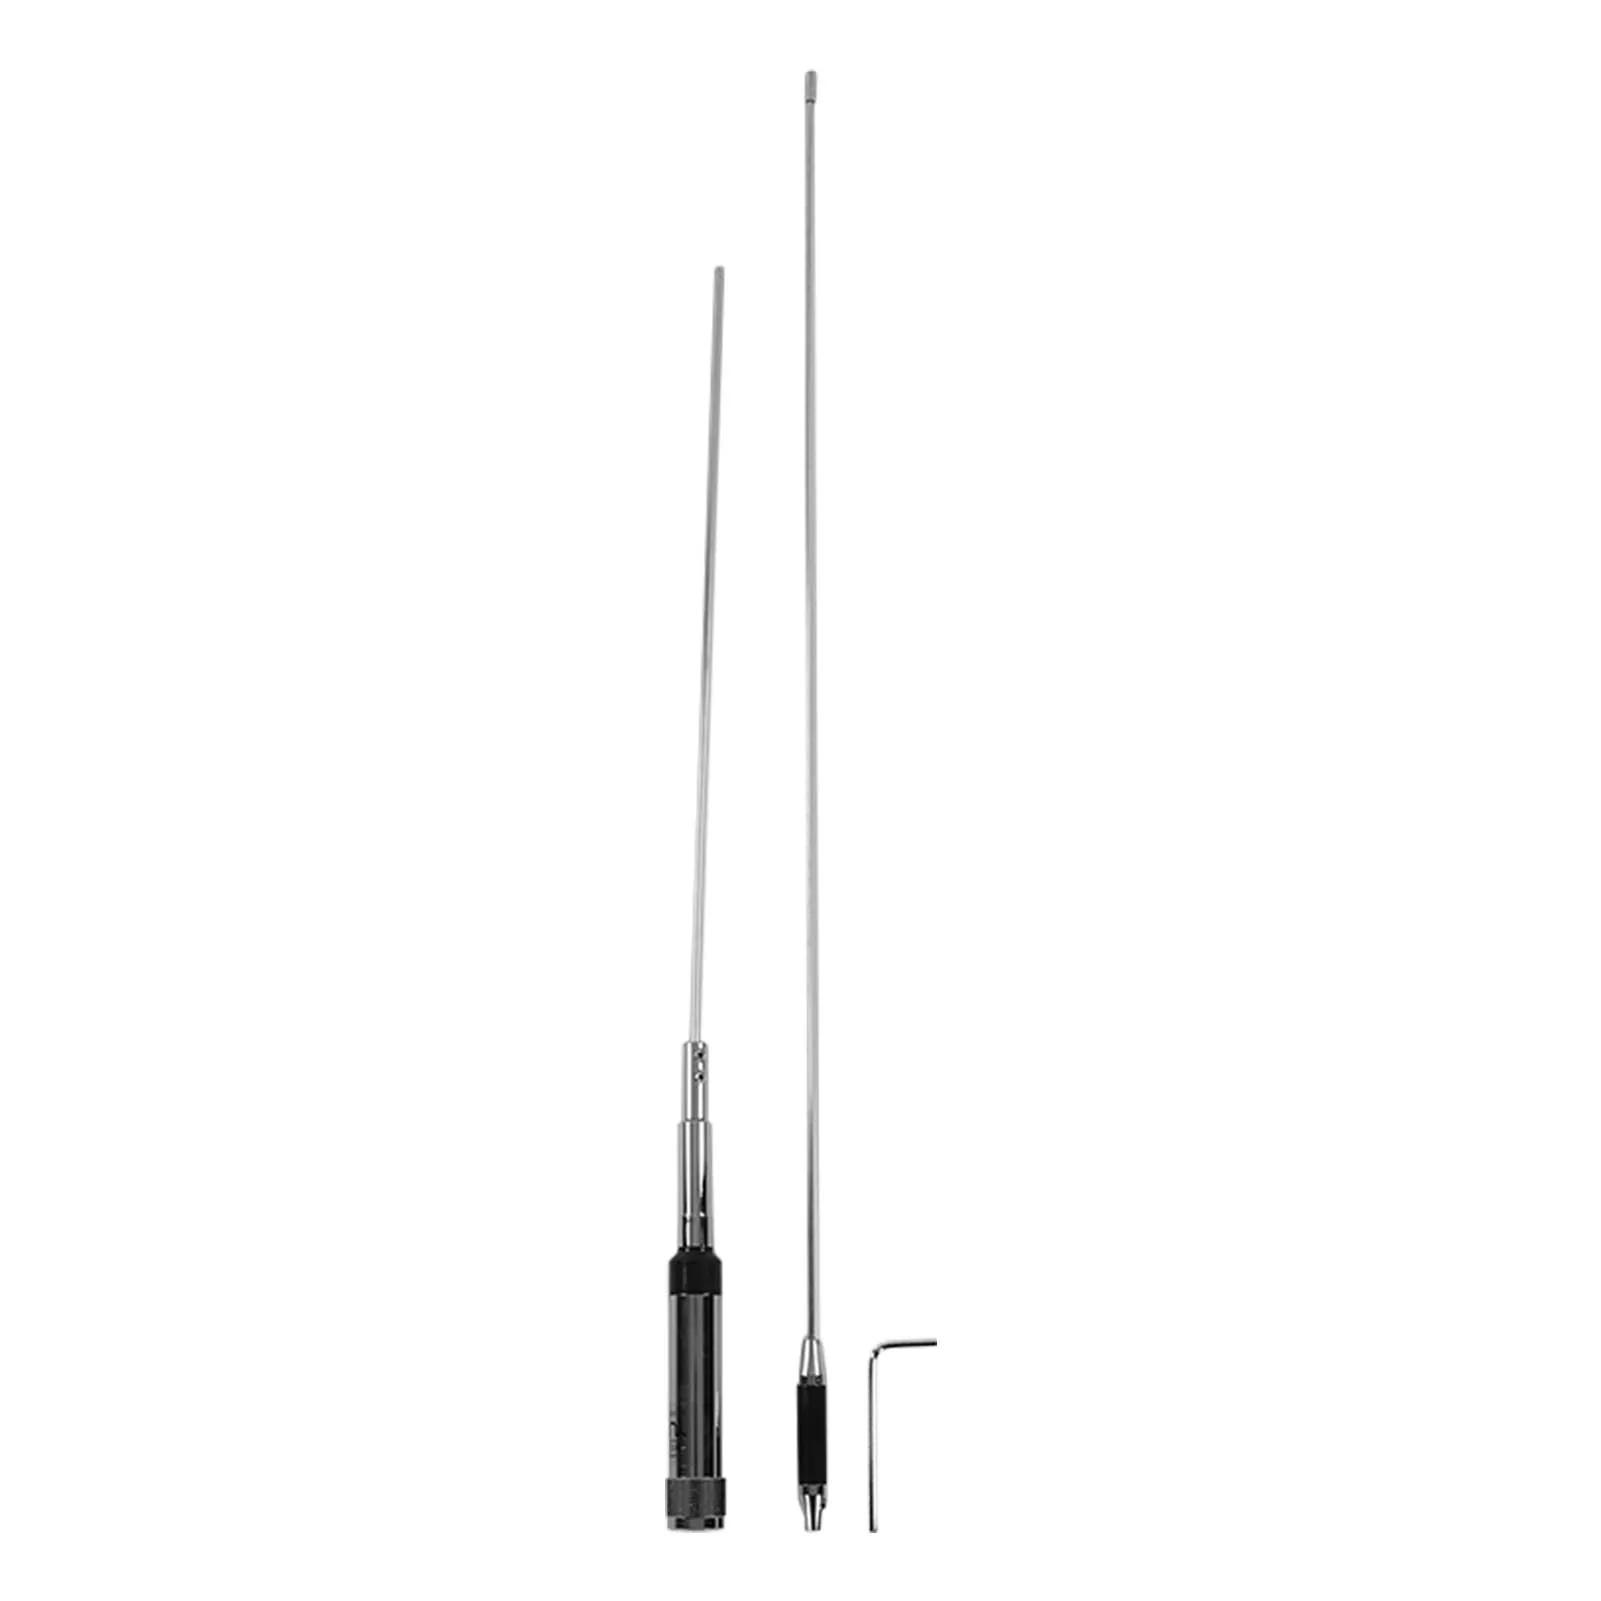   װ ڵ VHF UHF ׳, 3.0/5.5dBi,  SL16-J/M Ŀ, ˿ TM-271 TM-471 TM-281, 144/430MHz